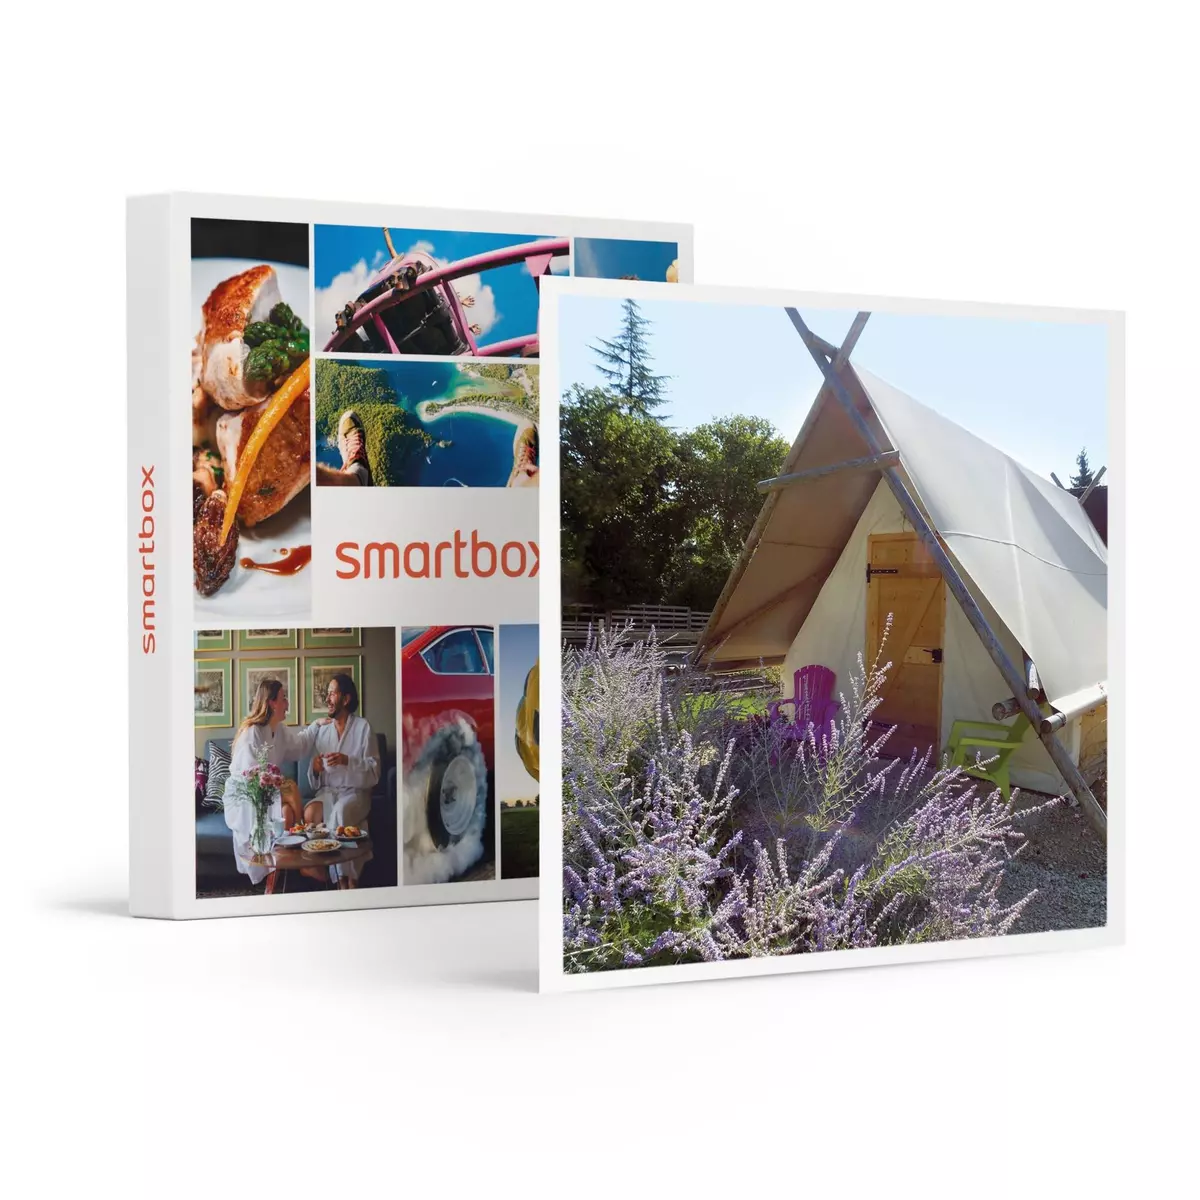 Smartbox 3 jours insolites en famille dans une tente près de Troyes - Coffret Cadeau Séjour